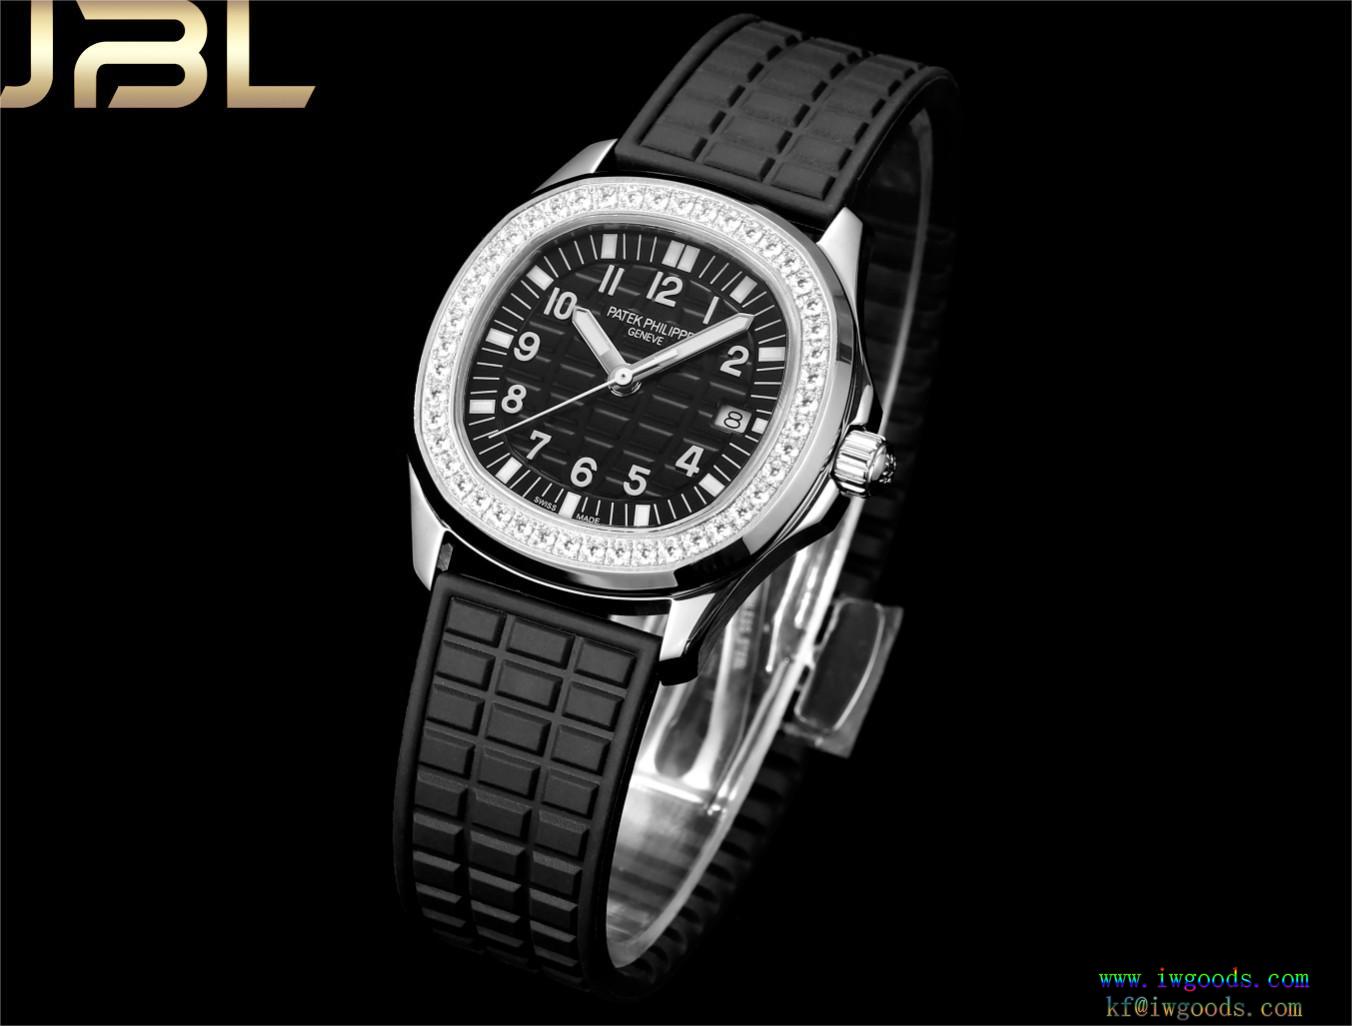 クォーツウォッチ/レディース腕時計パテックフィリップ Patek Philippe機能性が素晴らしい上品シックなお品偽 ブランド 購入